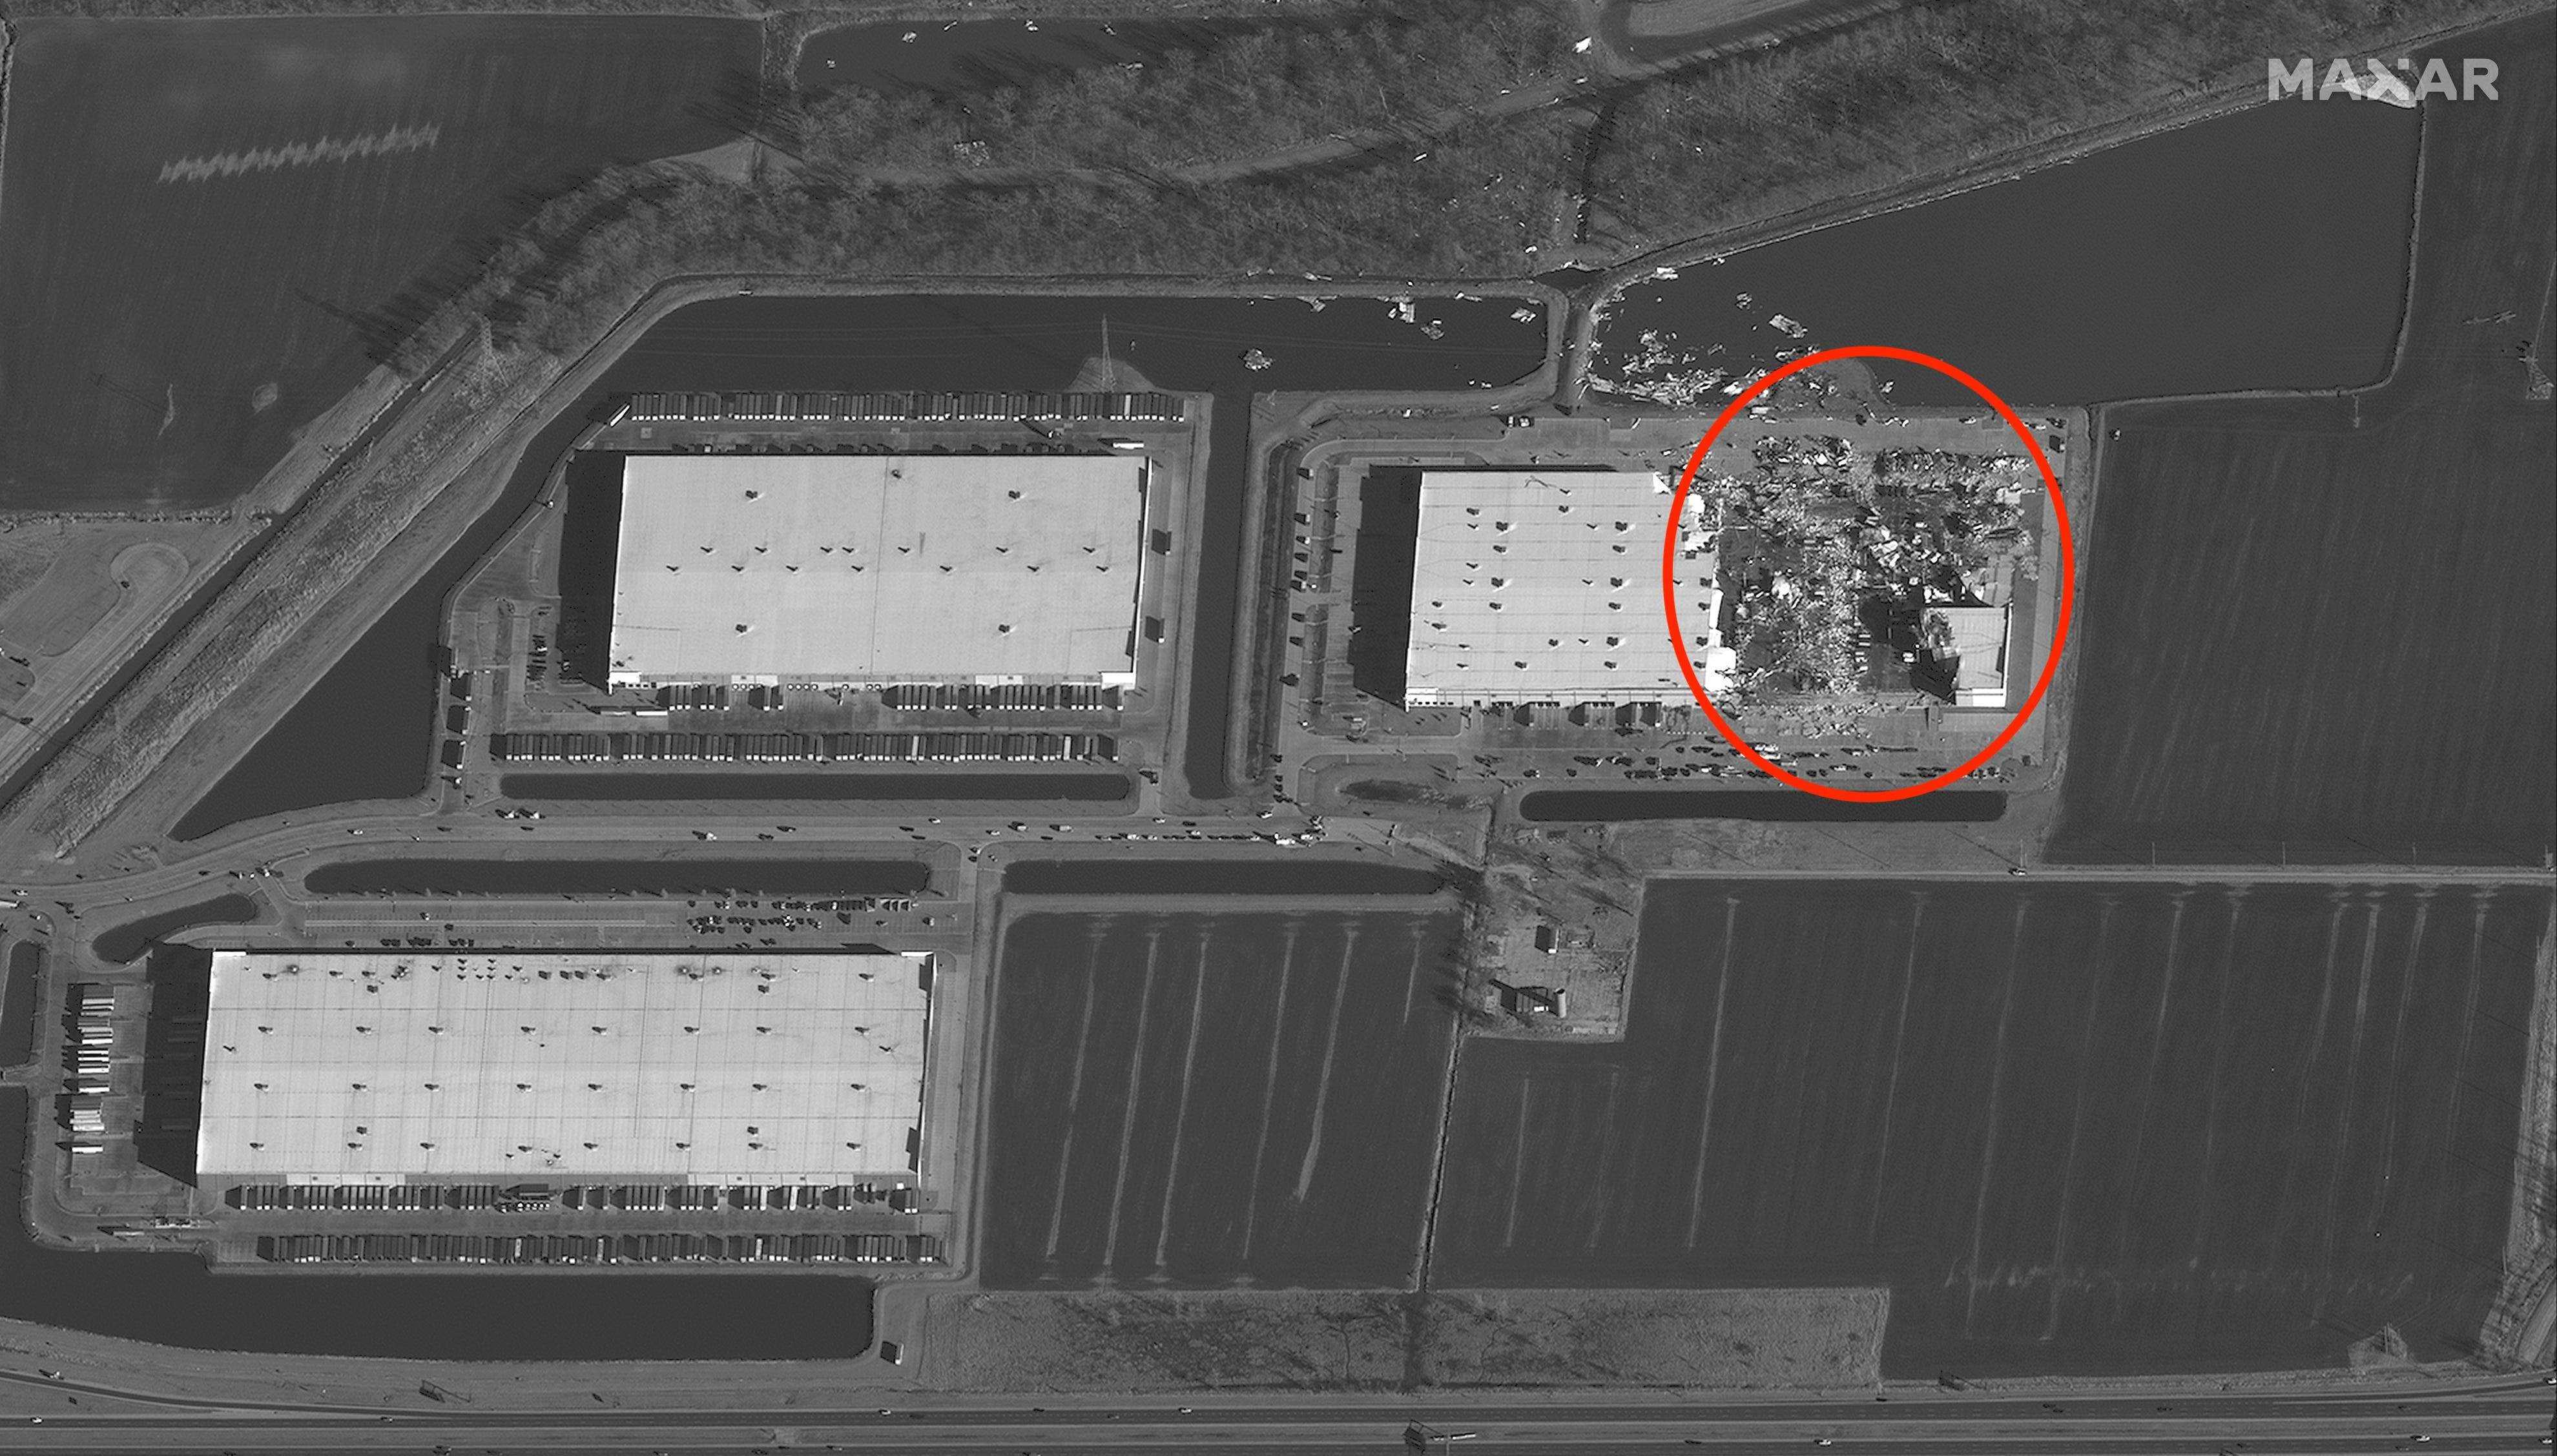 Ein Satellitenbild vom 11. Dezember zeigt die Zerstörung einer Amazon-Anlage in Edwardsville, Illinois, nachdem ein historischer Tornado einen großen Teil der Anlage gestürzt und mindestens sechs Menschen getötet hatte.